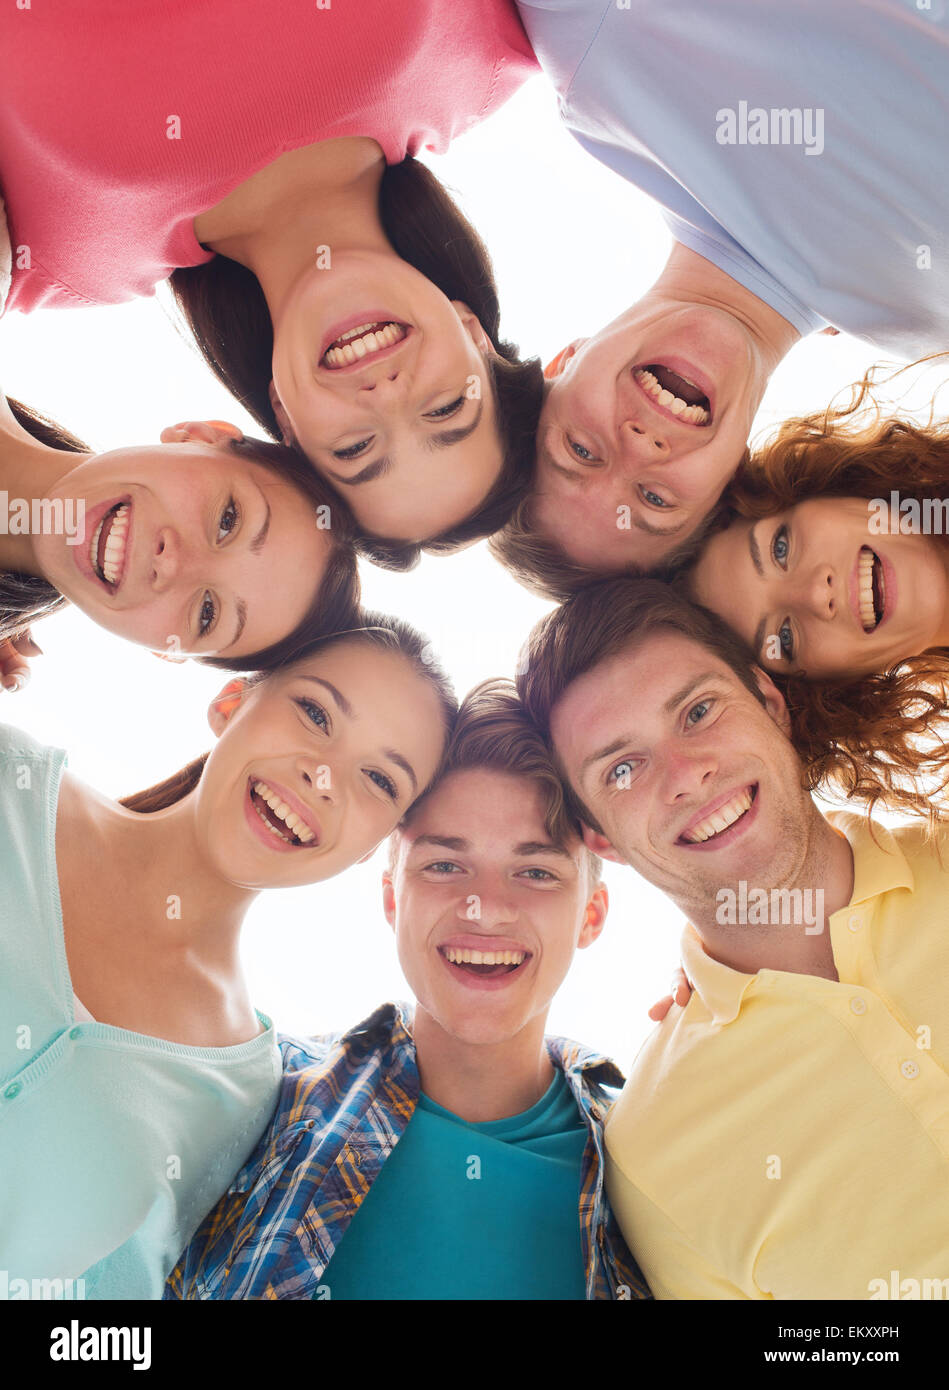 Groupe d'adolescents souriants Banque D'Images